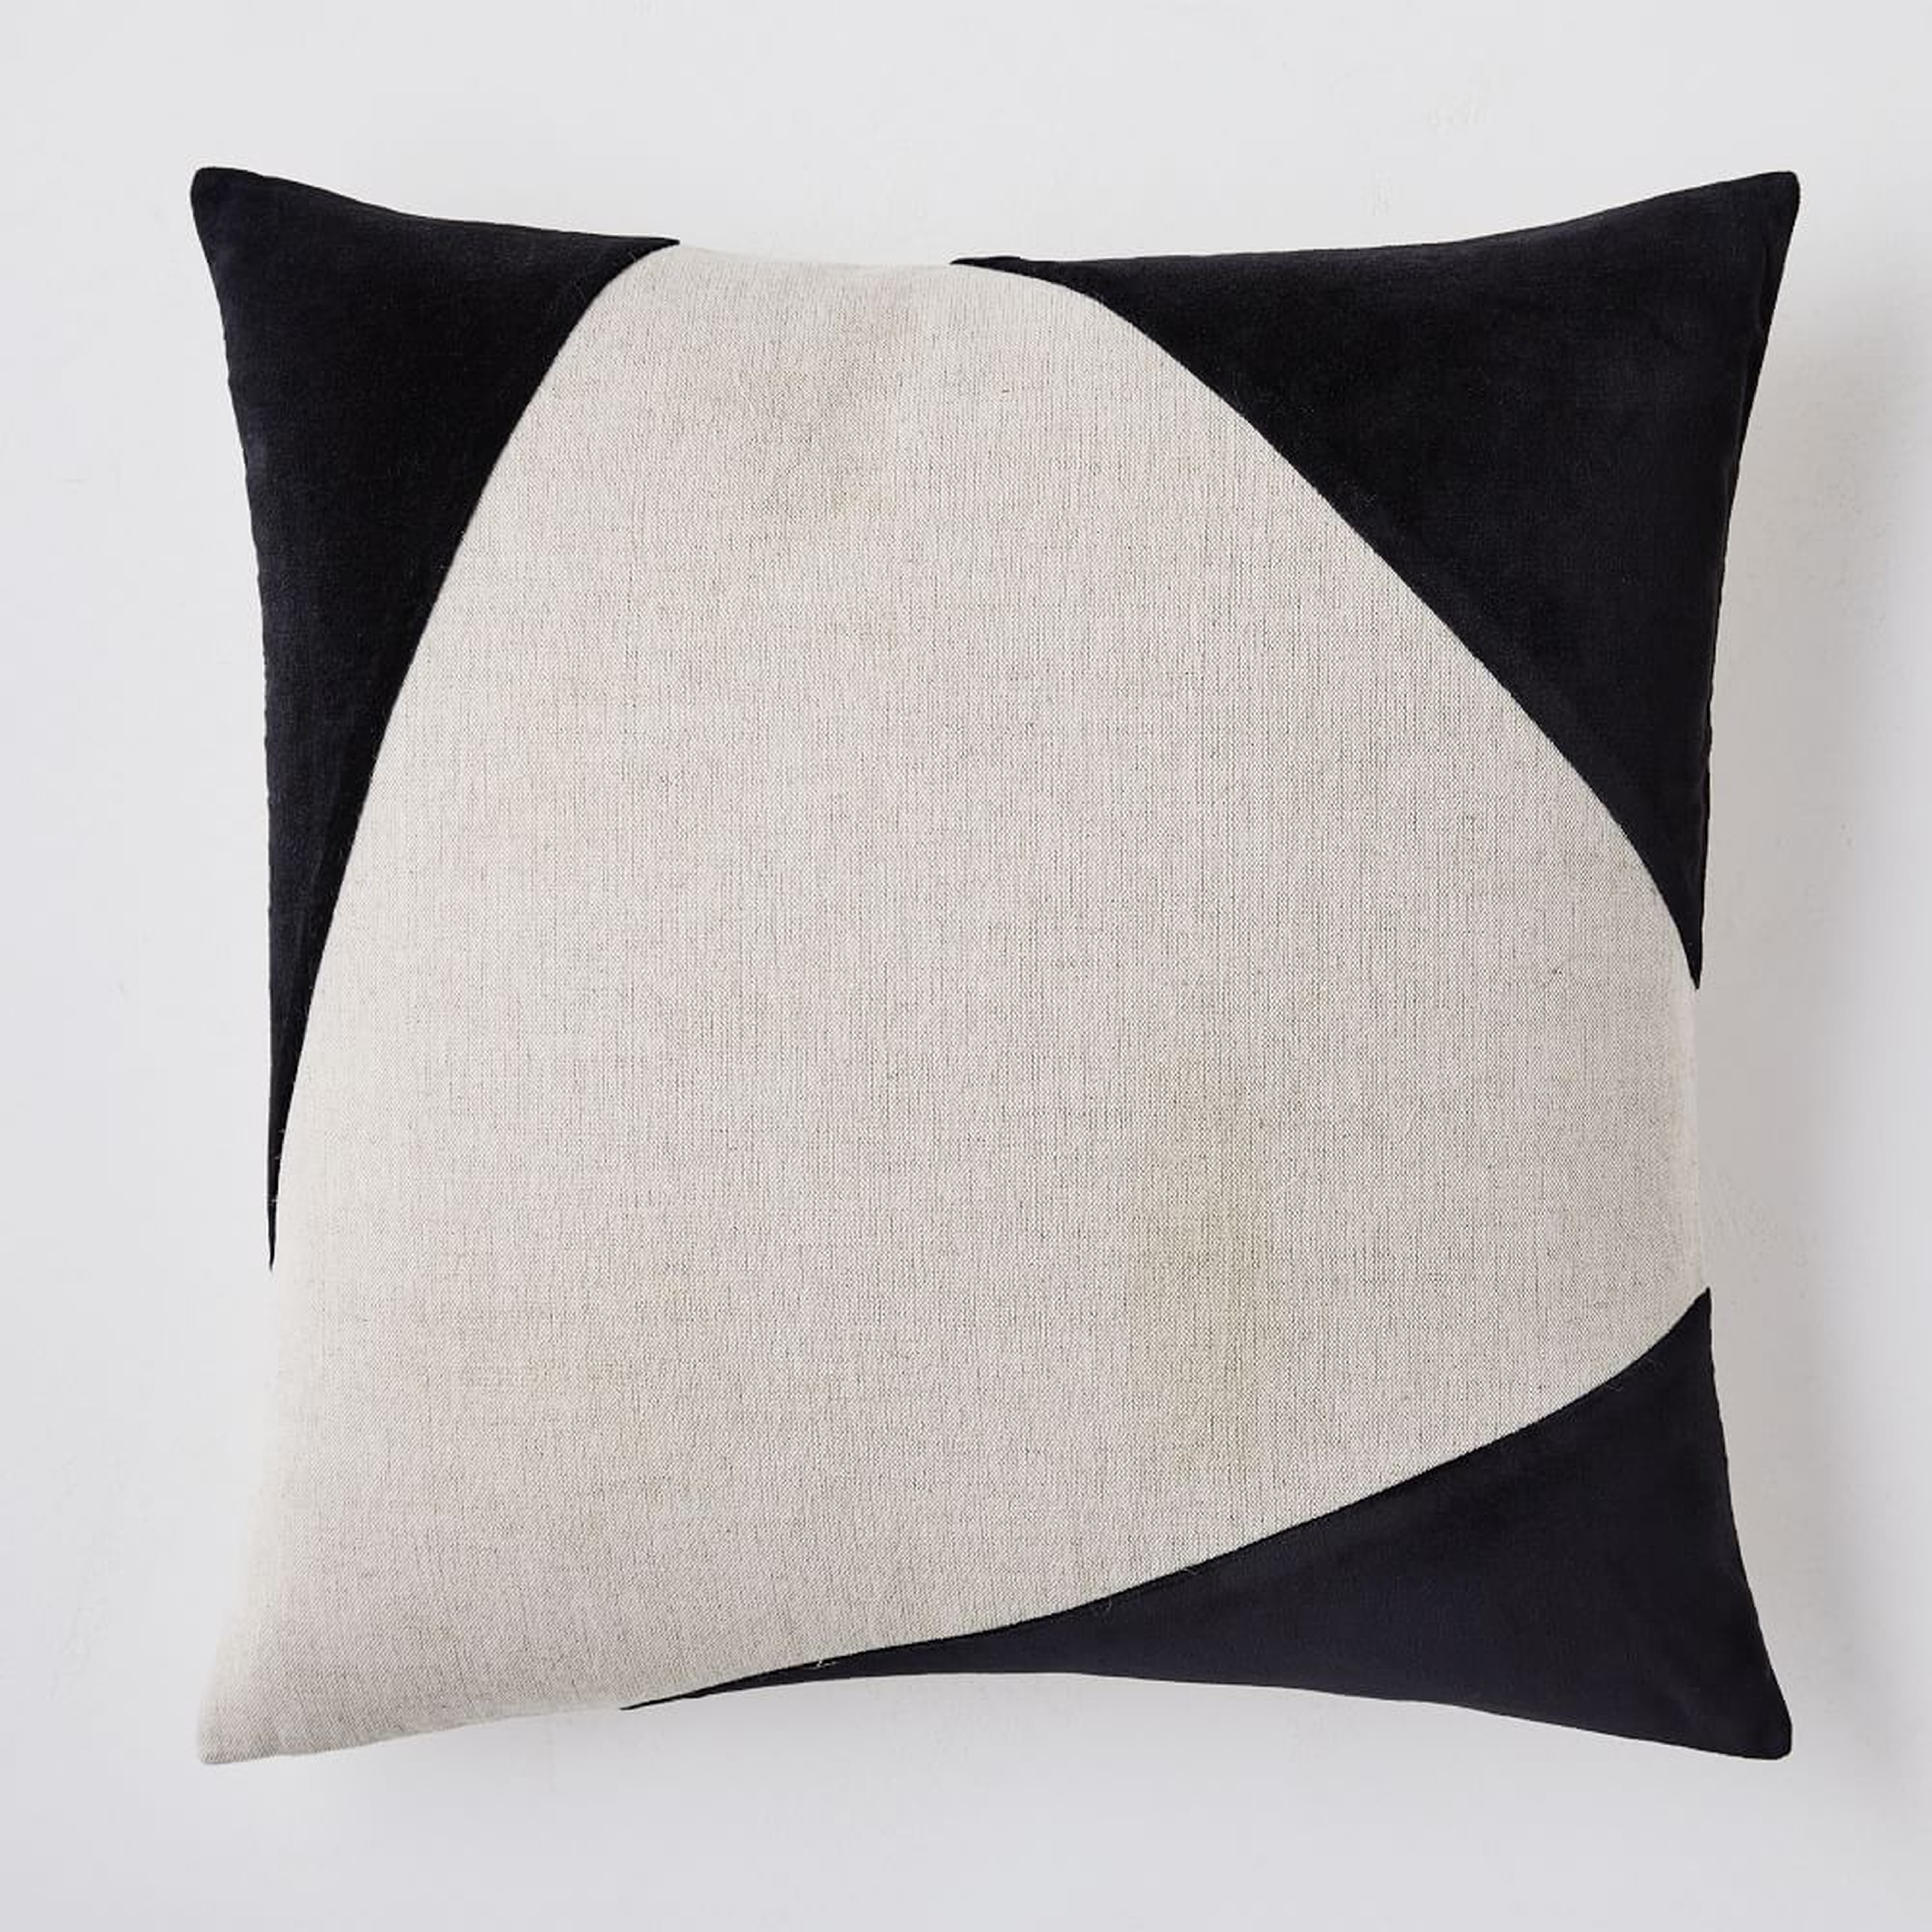 Cotton Linen + Velvet Corners Pillow Cover, 24"x24", Black, Set of 2 - West Elm